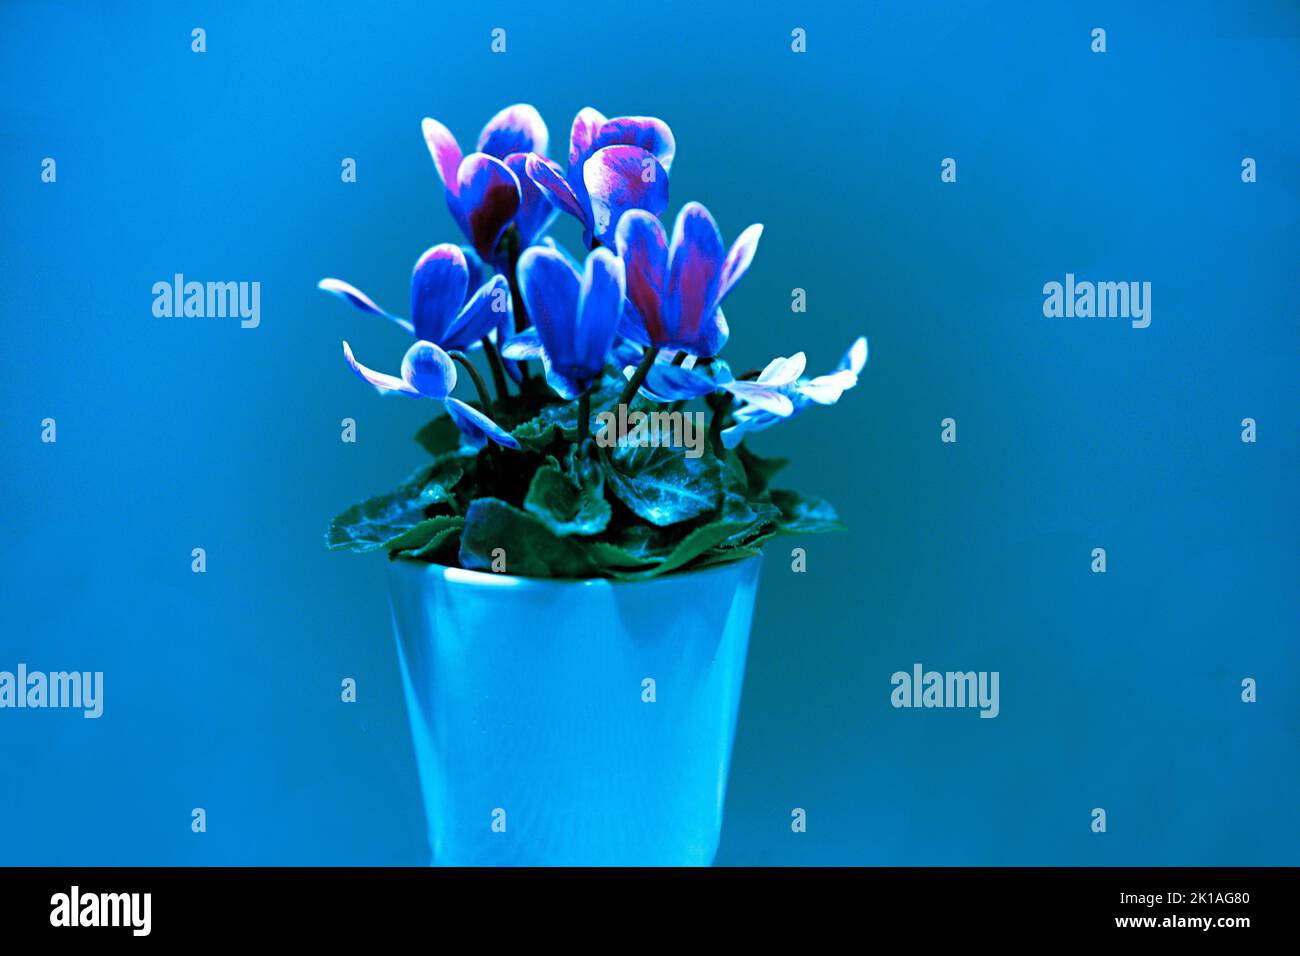 Alpenveilchen einzelner Blumenstock mit verschiedenen Farbnuacen grün, hellblau, blau, rosa, gosaschwarz, vielett, braun, Foto de stock